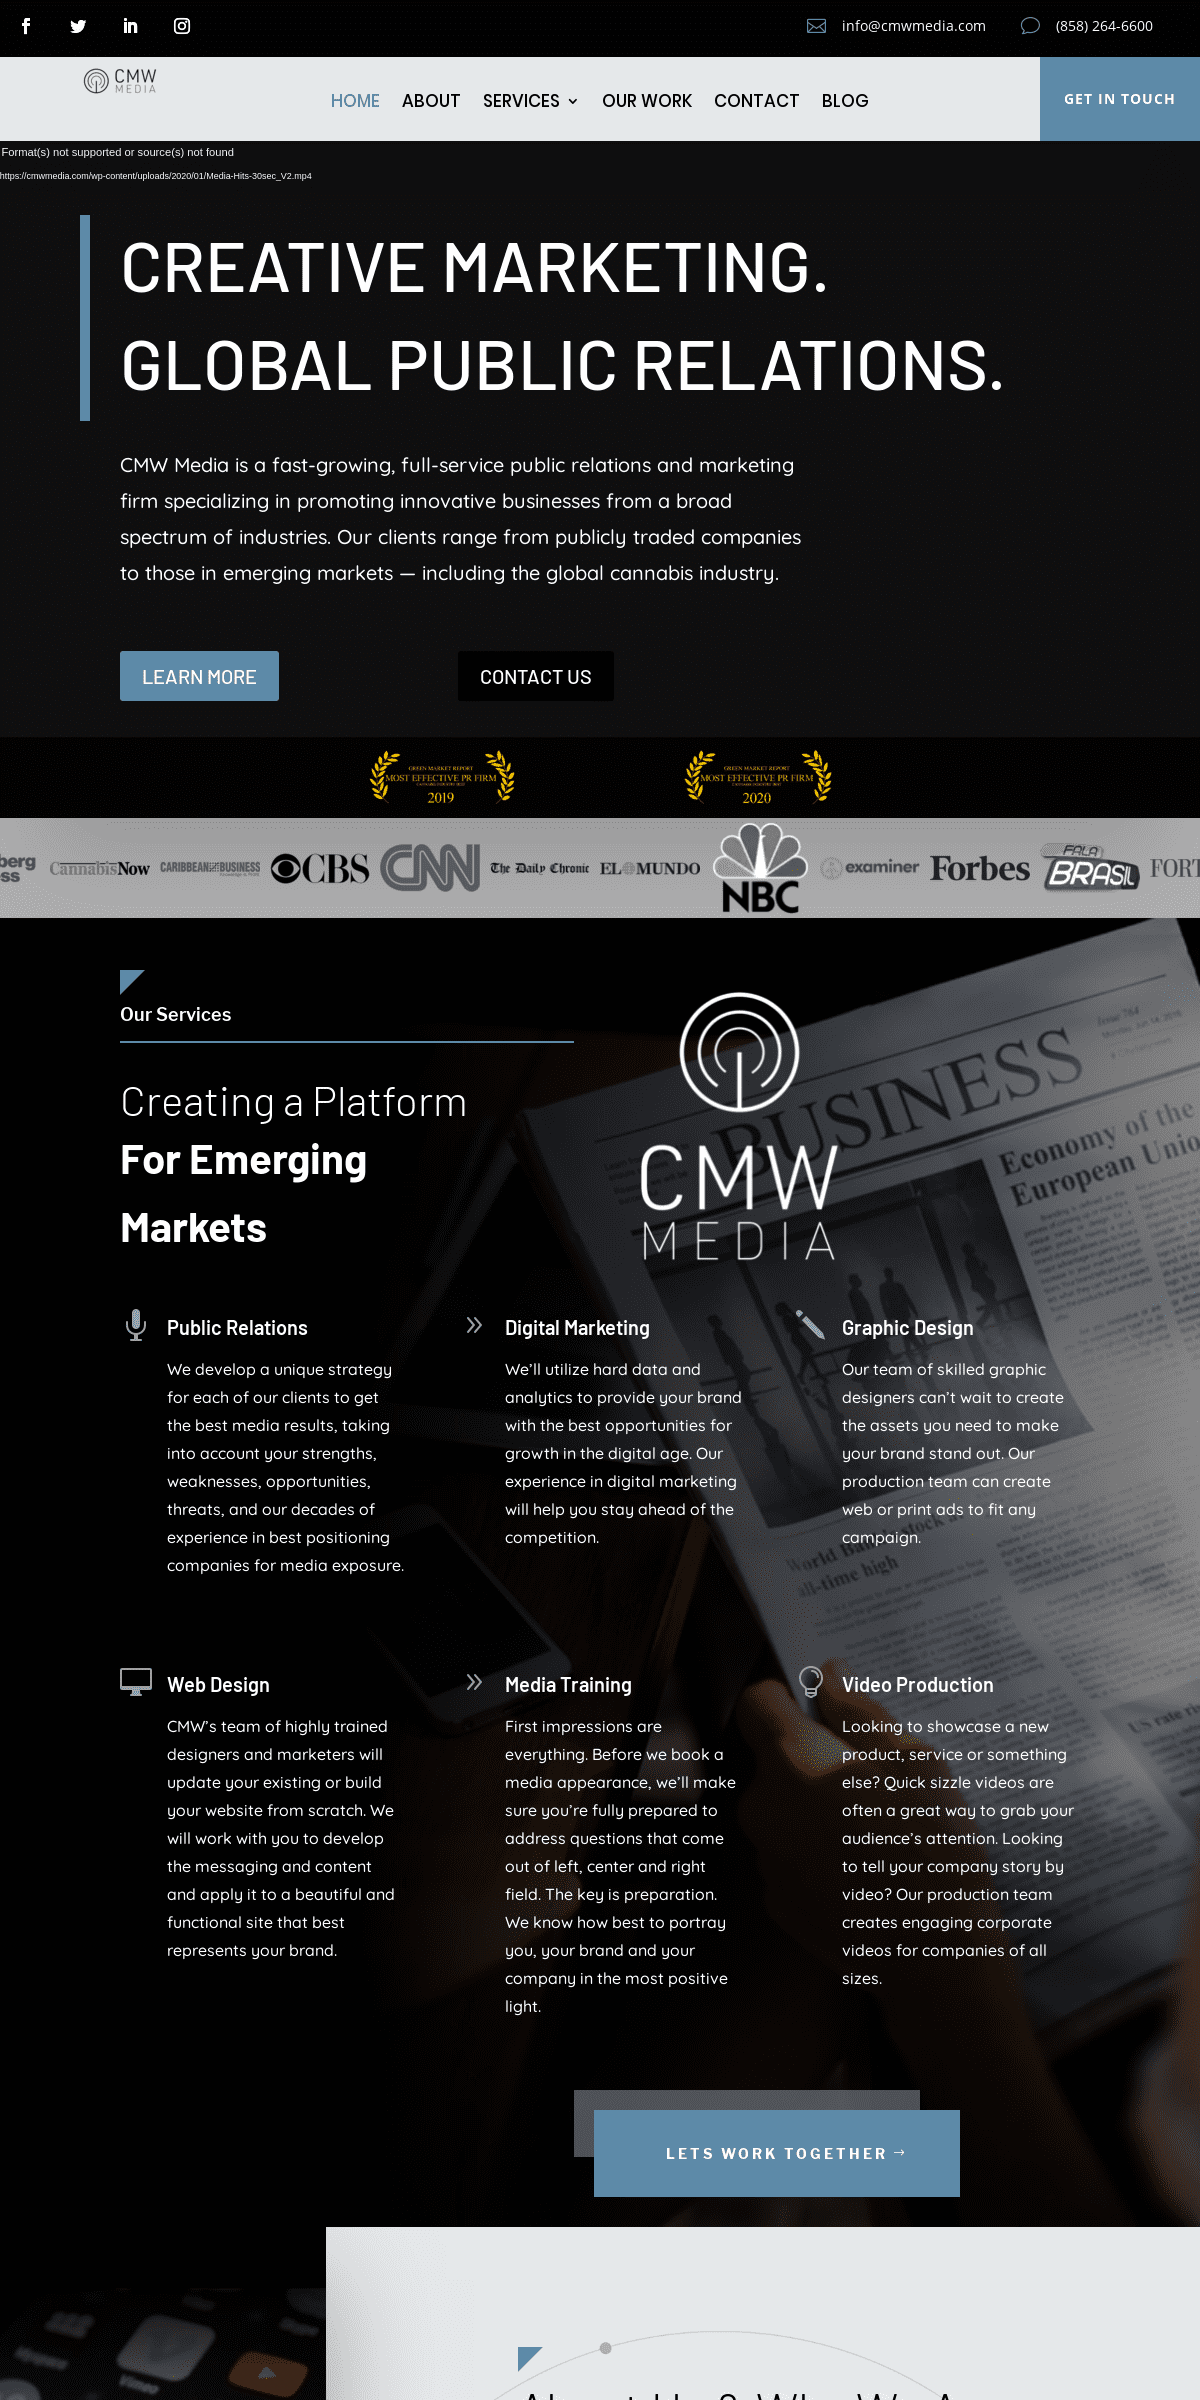 A complete backup of cmwmedia.com